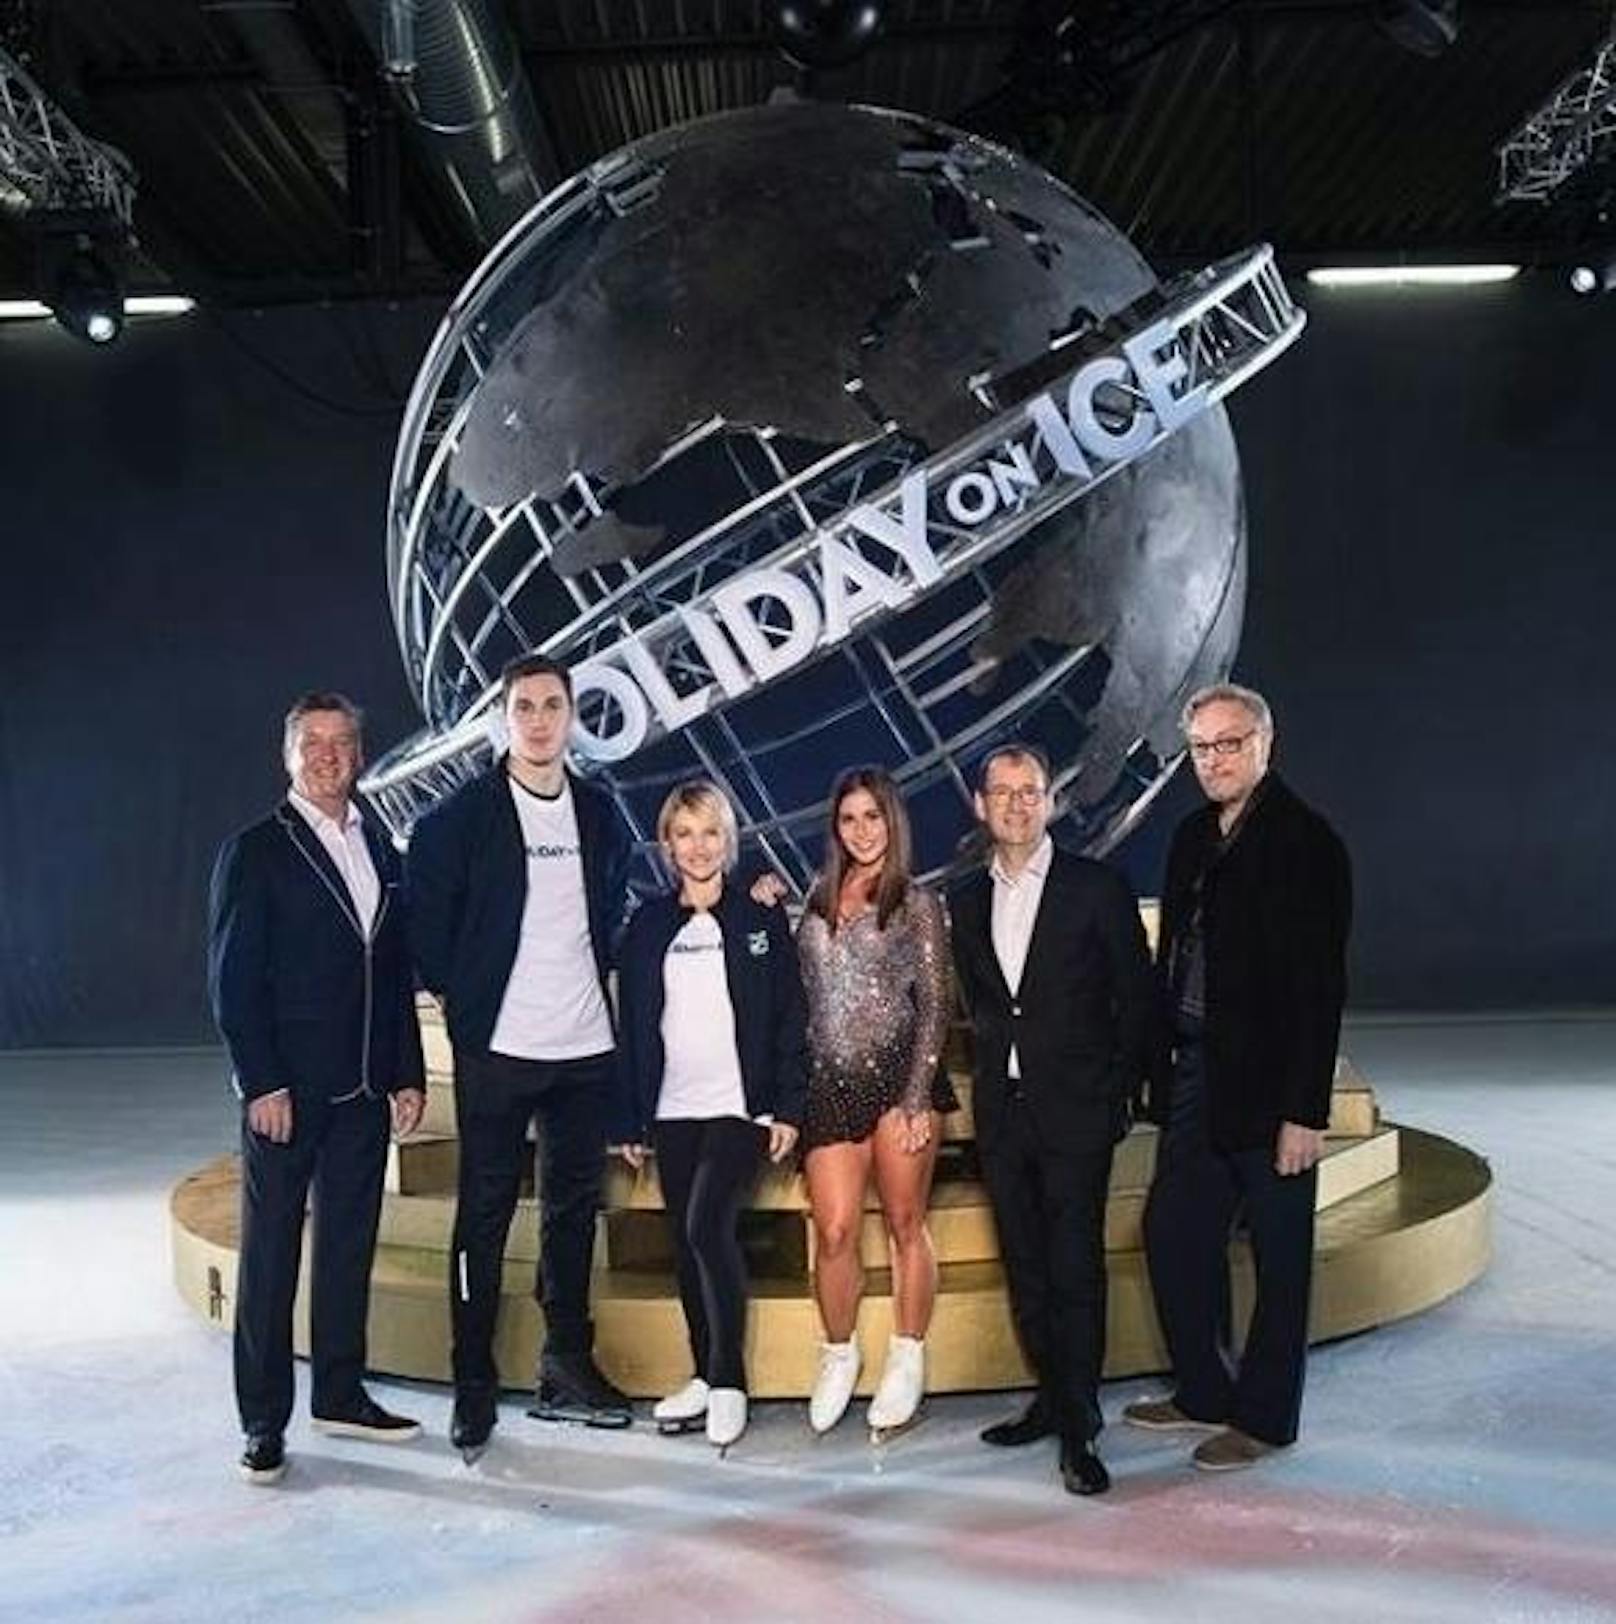 22.05.2019: Sarah Lombardi kehrt nach ihrem Triumph bei der TV-Show "Dancing On Ice" wieder auf die Eisfläche zurück. Sie wird Star der neuen Show von "Holiday On Ice".